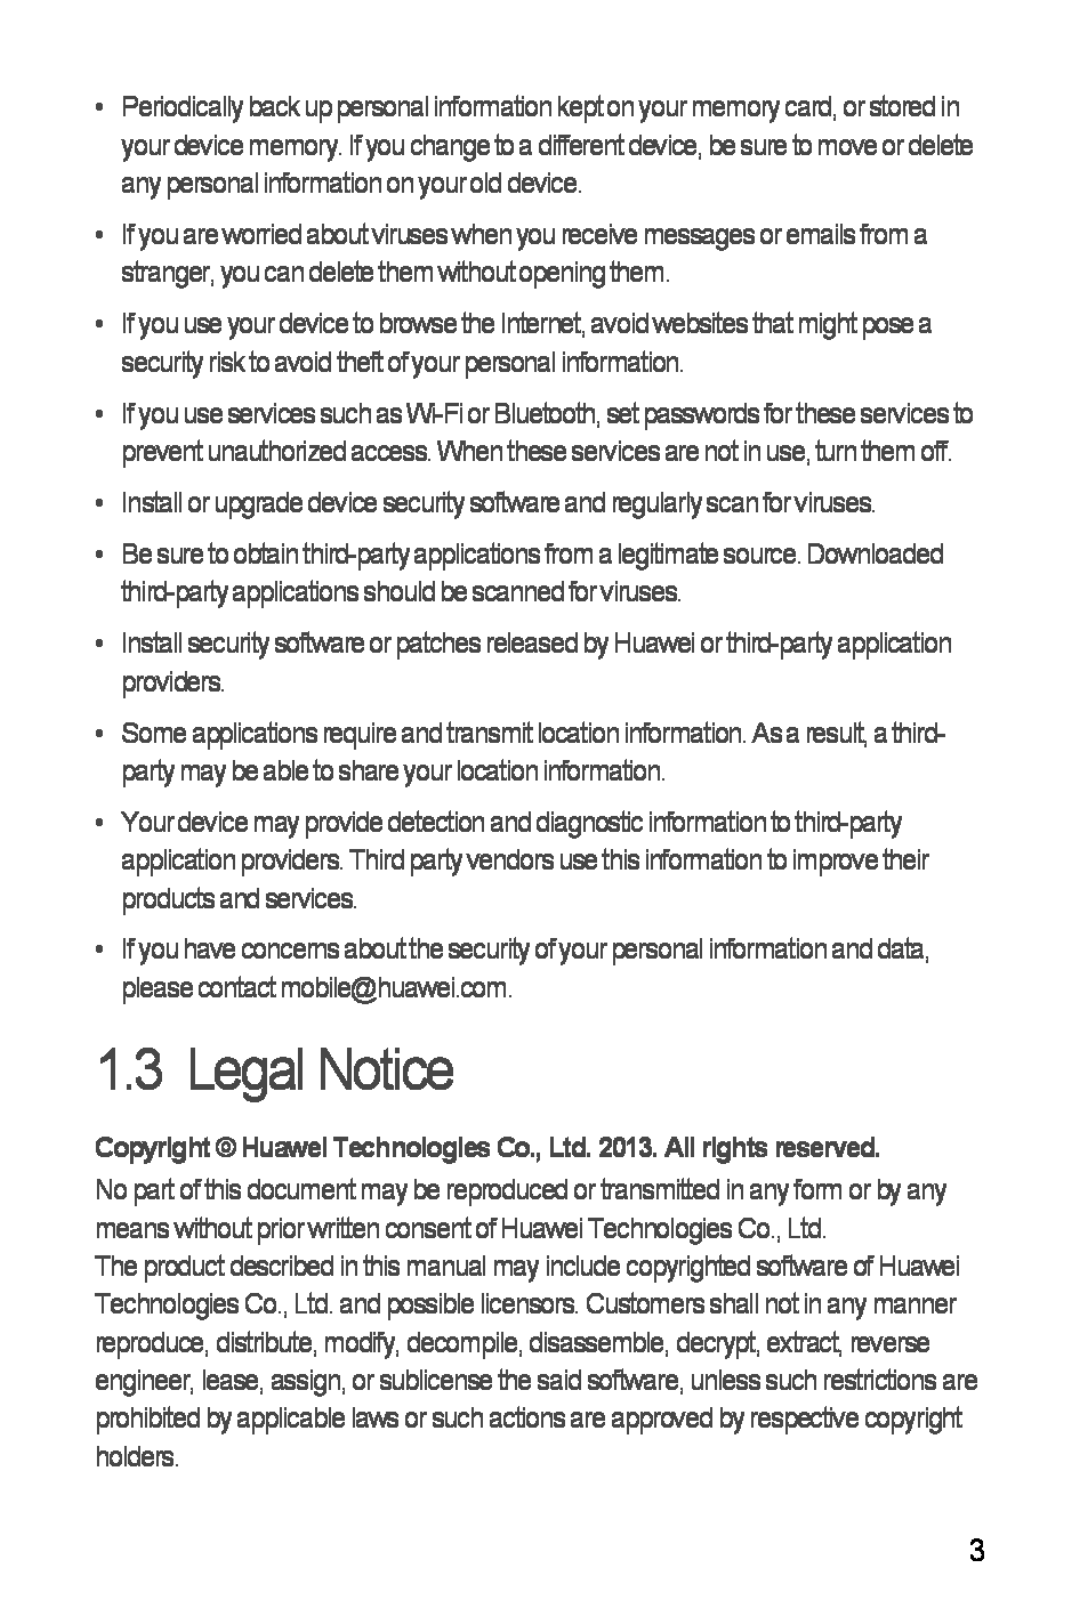 Huawei H881C manual Legal Notice 